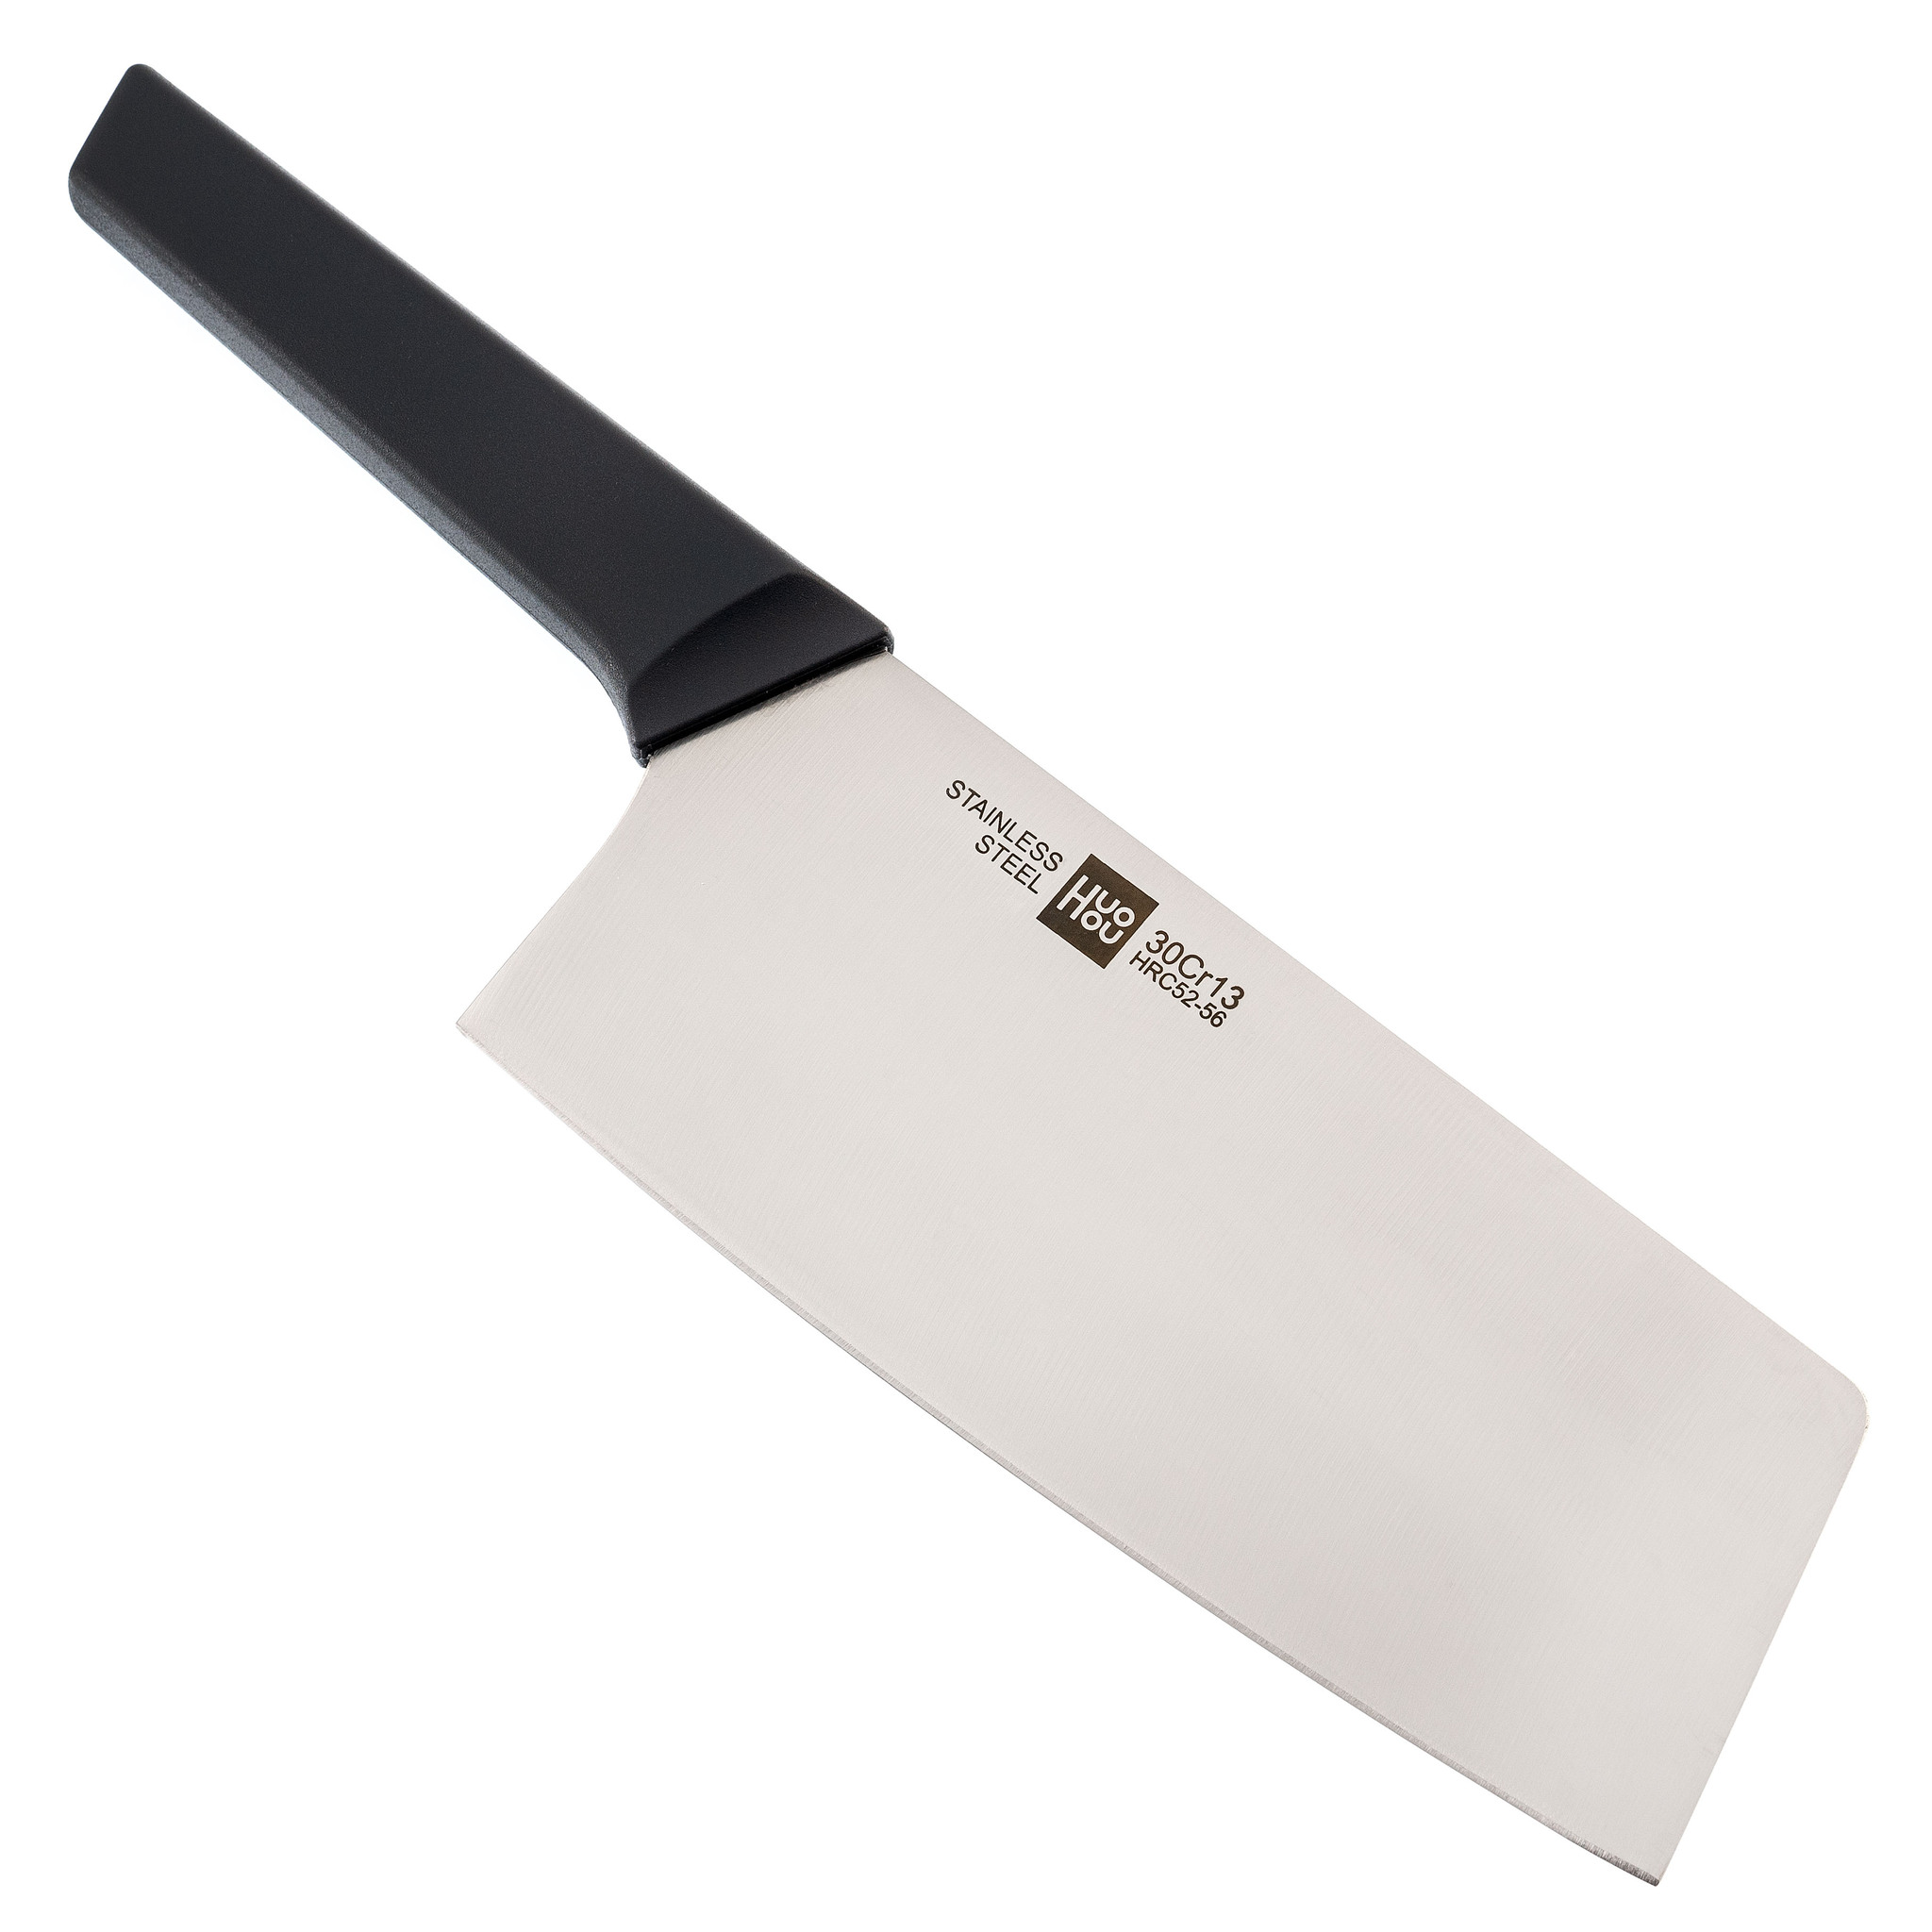 фото Набор кухонных ножей на подставке xiaomi huohou 4-piece kitchen knife set lite